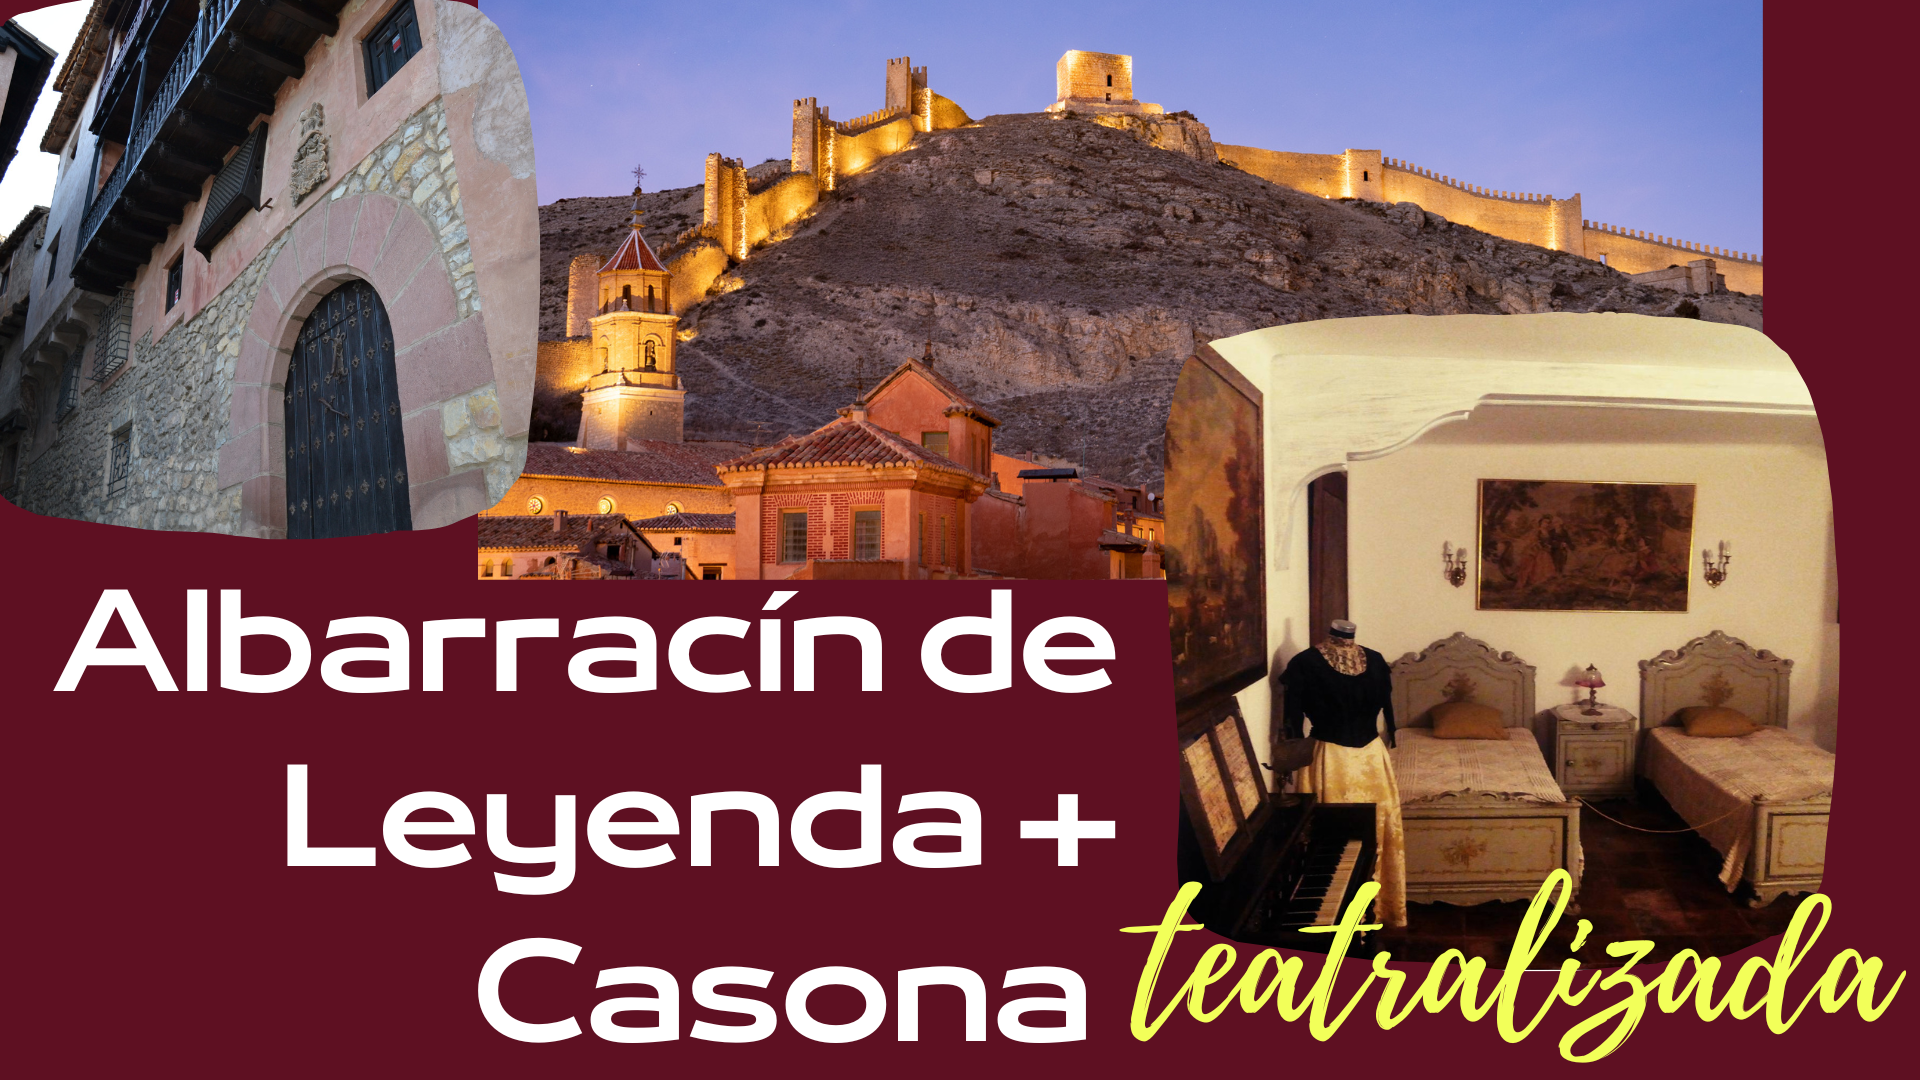 El sábado 2 de Julio: Visita guiada en Albarracín de Leyenda + Casa Museo teatralizada!